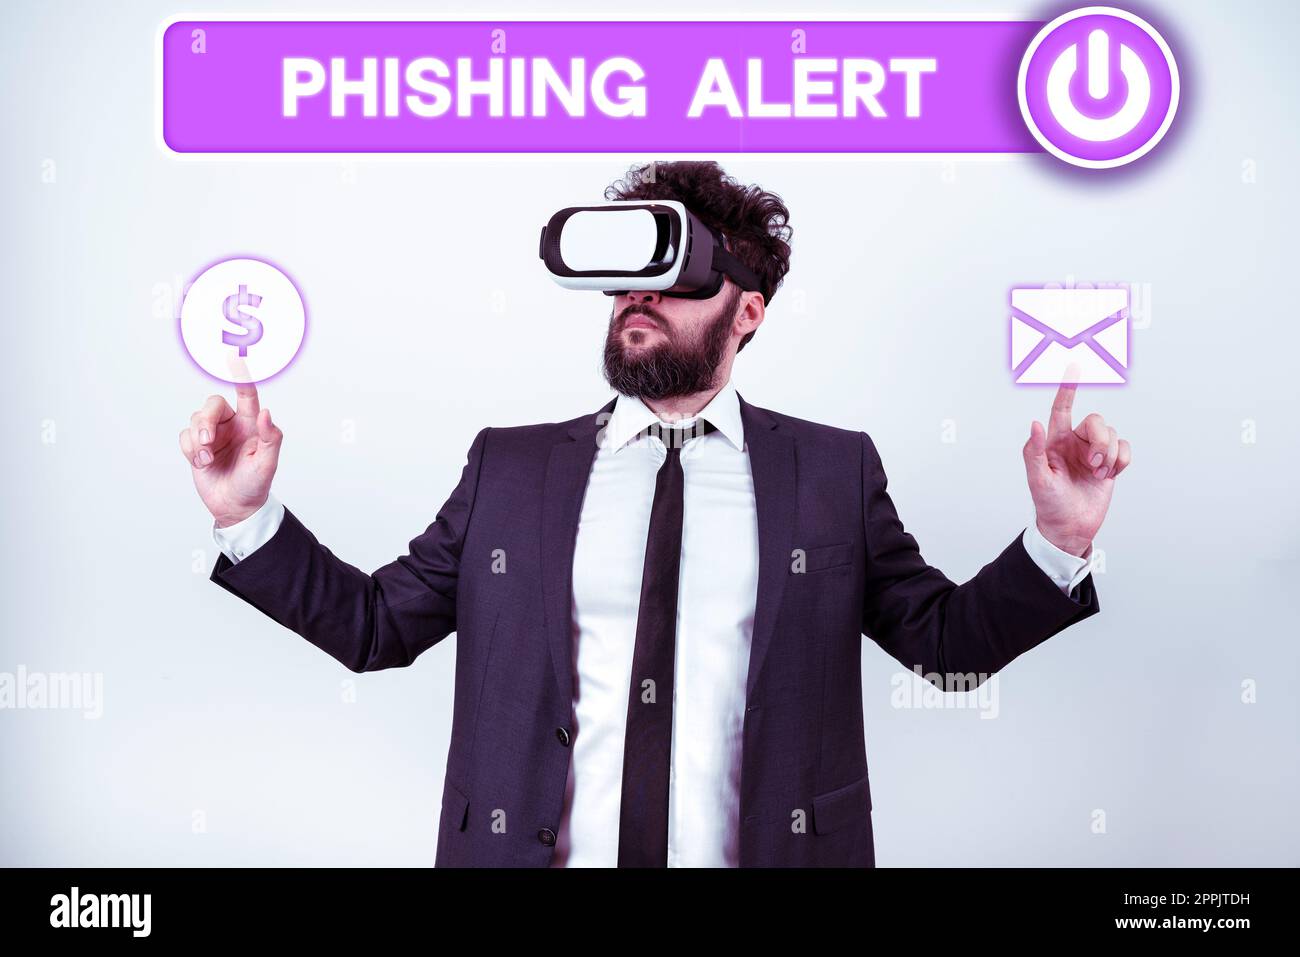 Légende conceptuelle : alerte de phishing. Approche commerciale consciente de la tentative frauduleuse d'obtention d'informations sensibles Banque D'Images